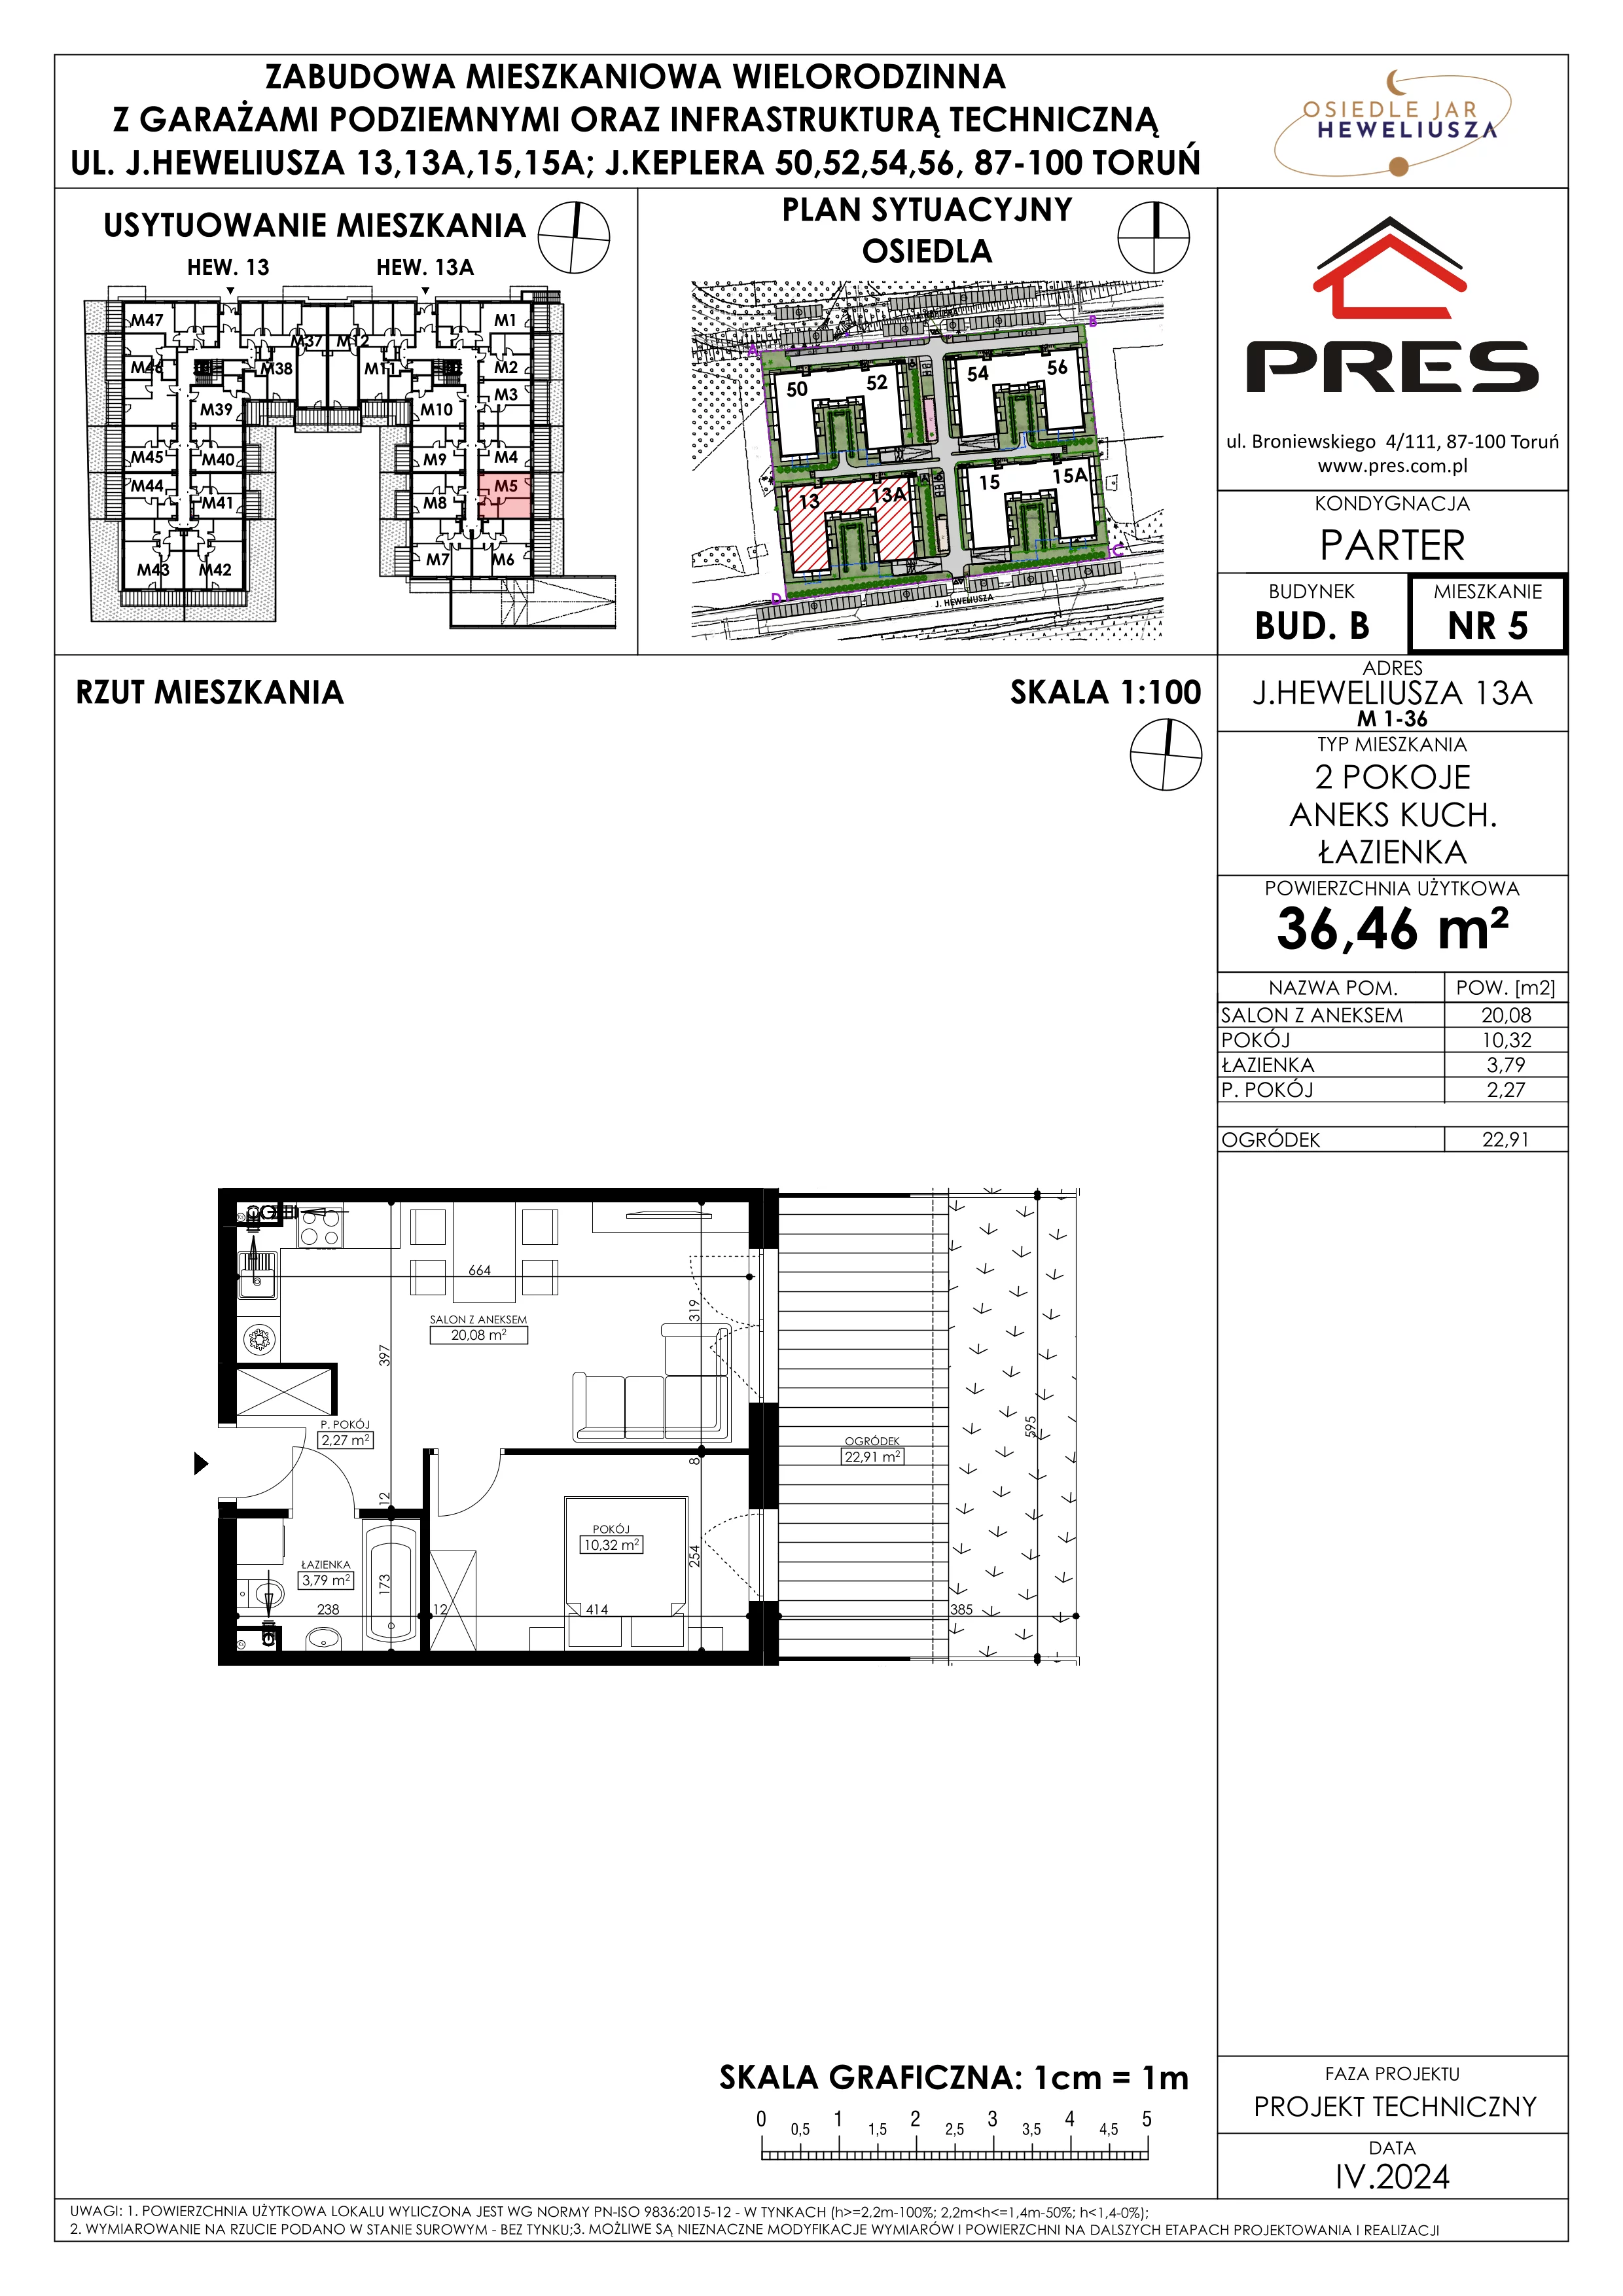 Mieszkanie 36,46 m², parter, oferta nr 5, Osiedle JAR Heweliusza - Etap II, Toruń, Wrzosy, JAR, ul. Heweliusza 13-15A